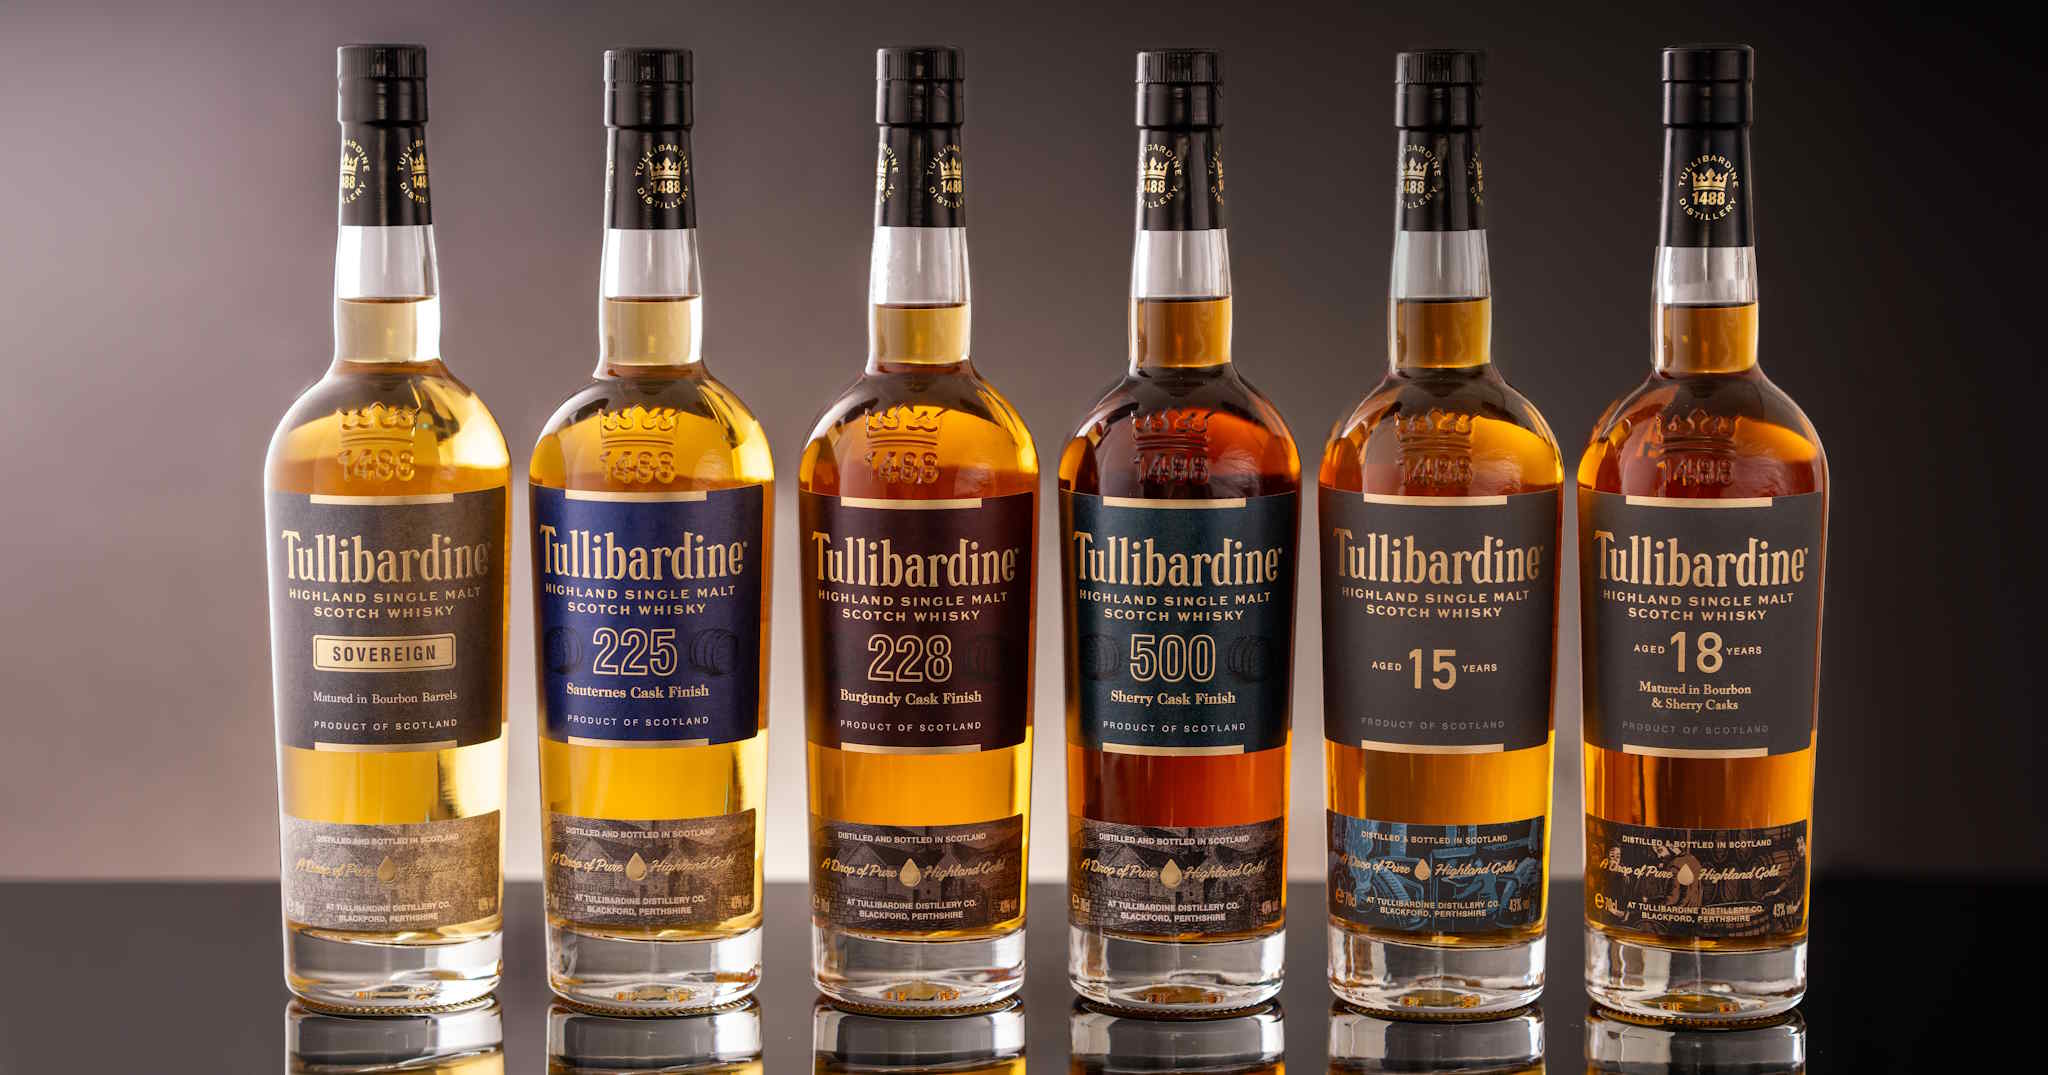 Tullibardine Whisky Distillery Explore the Range